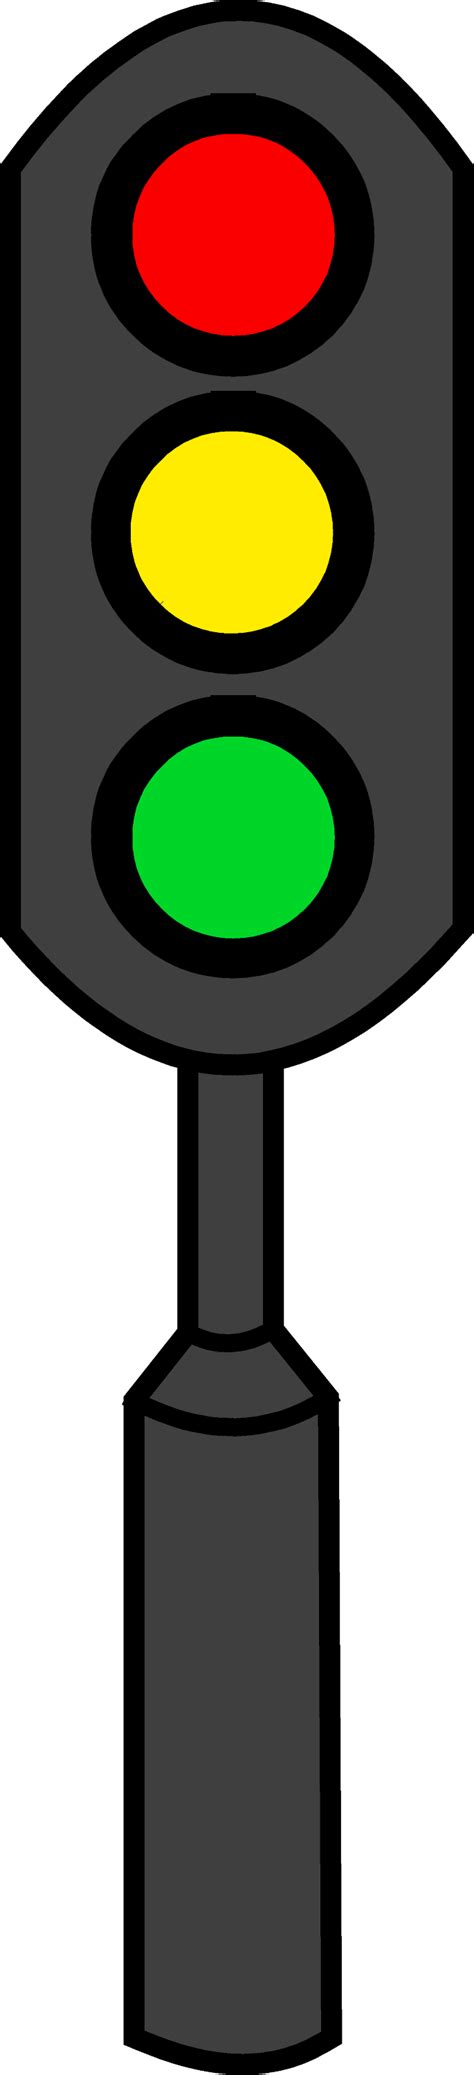 Traffic Light Clip Art Free Clip Art